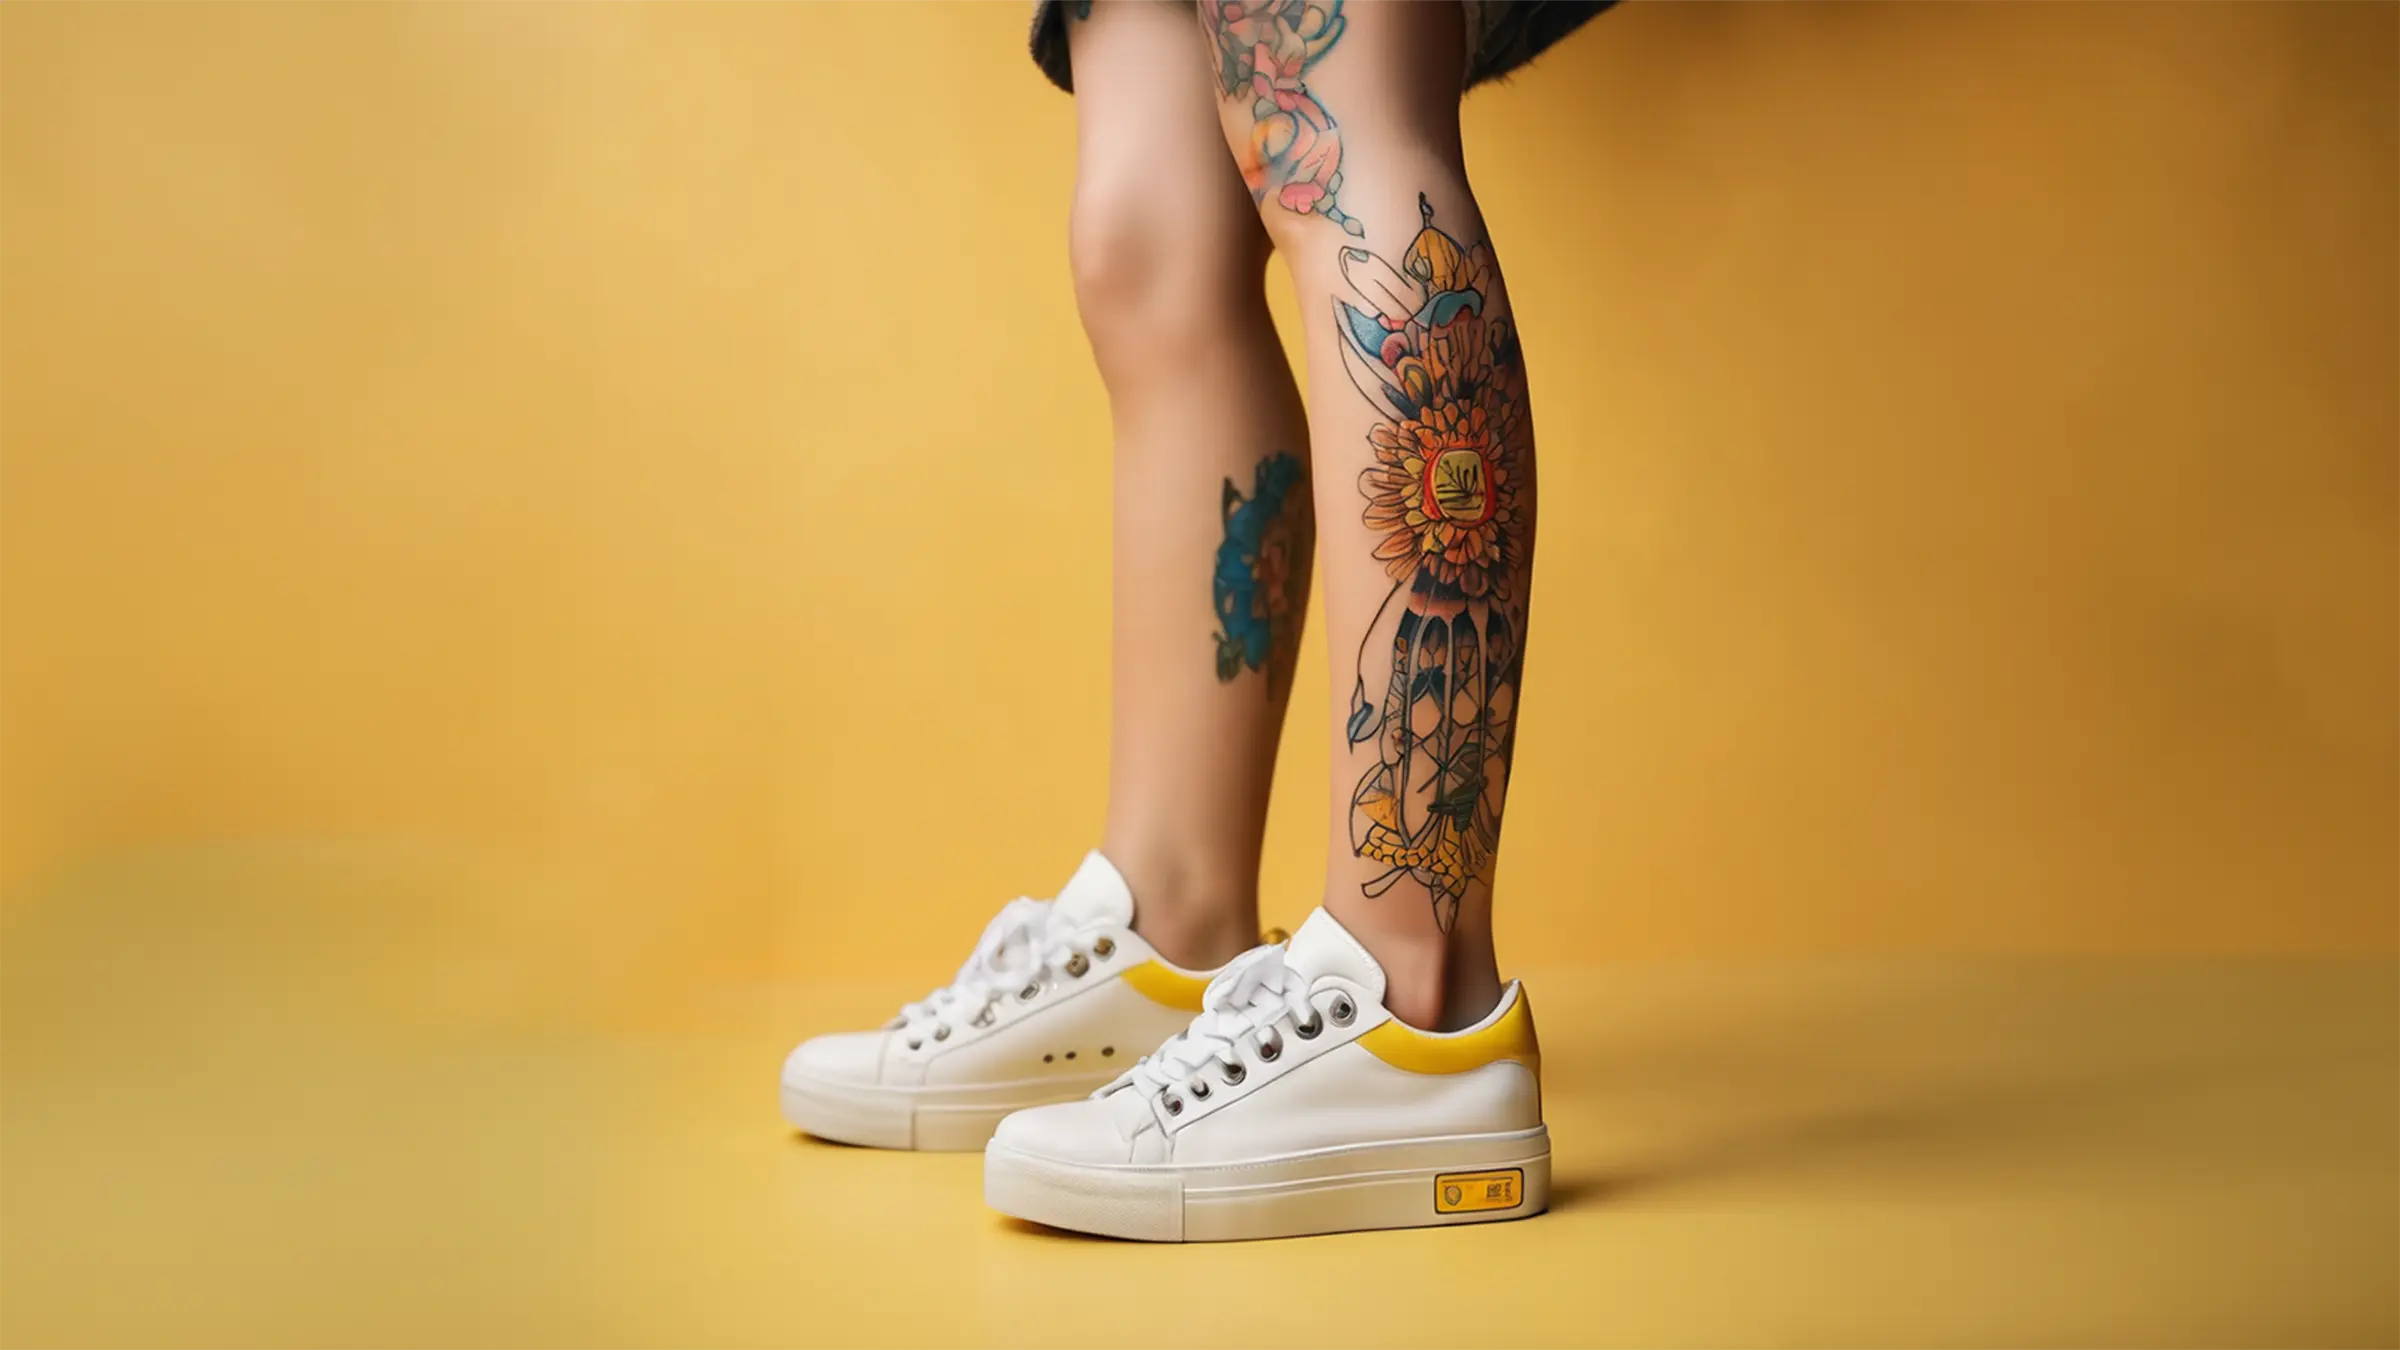 Bunt tätowierte Beine einer jungen Frau mit modernen Sneakers